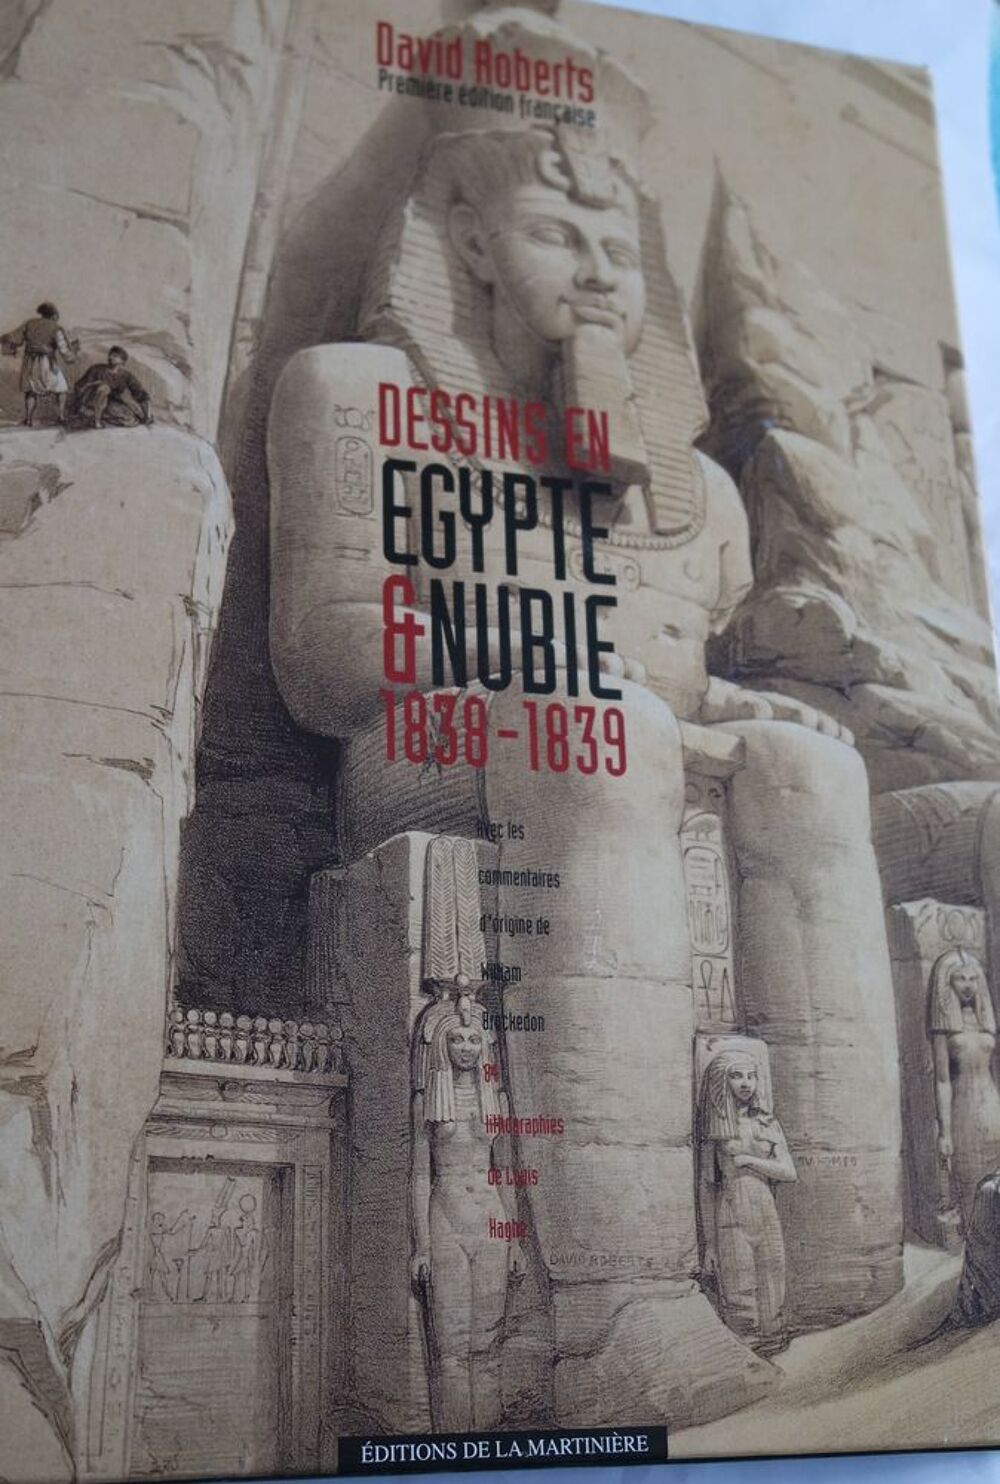 Dessins en Egypte et Nubie de David Roberts Livres et BD